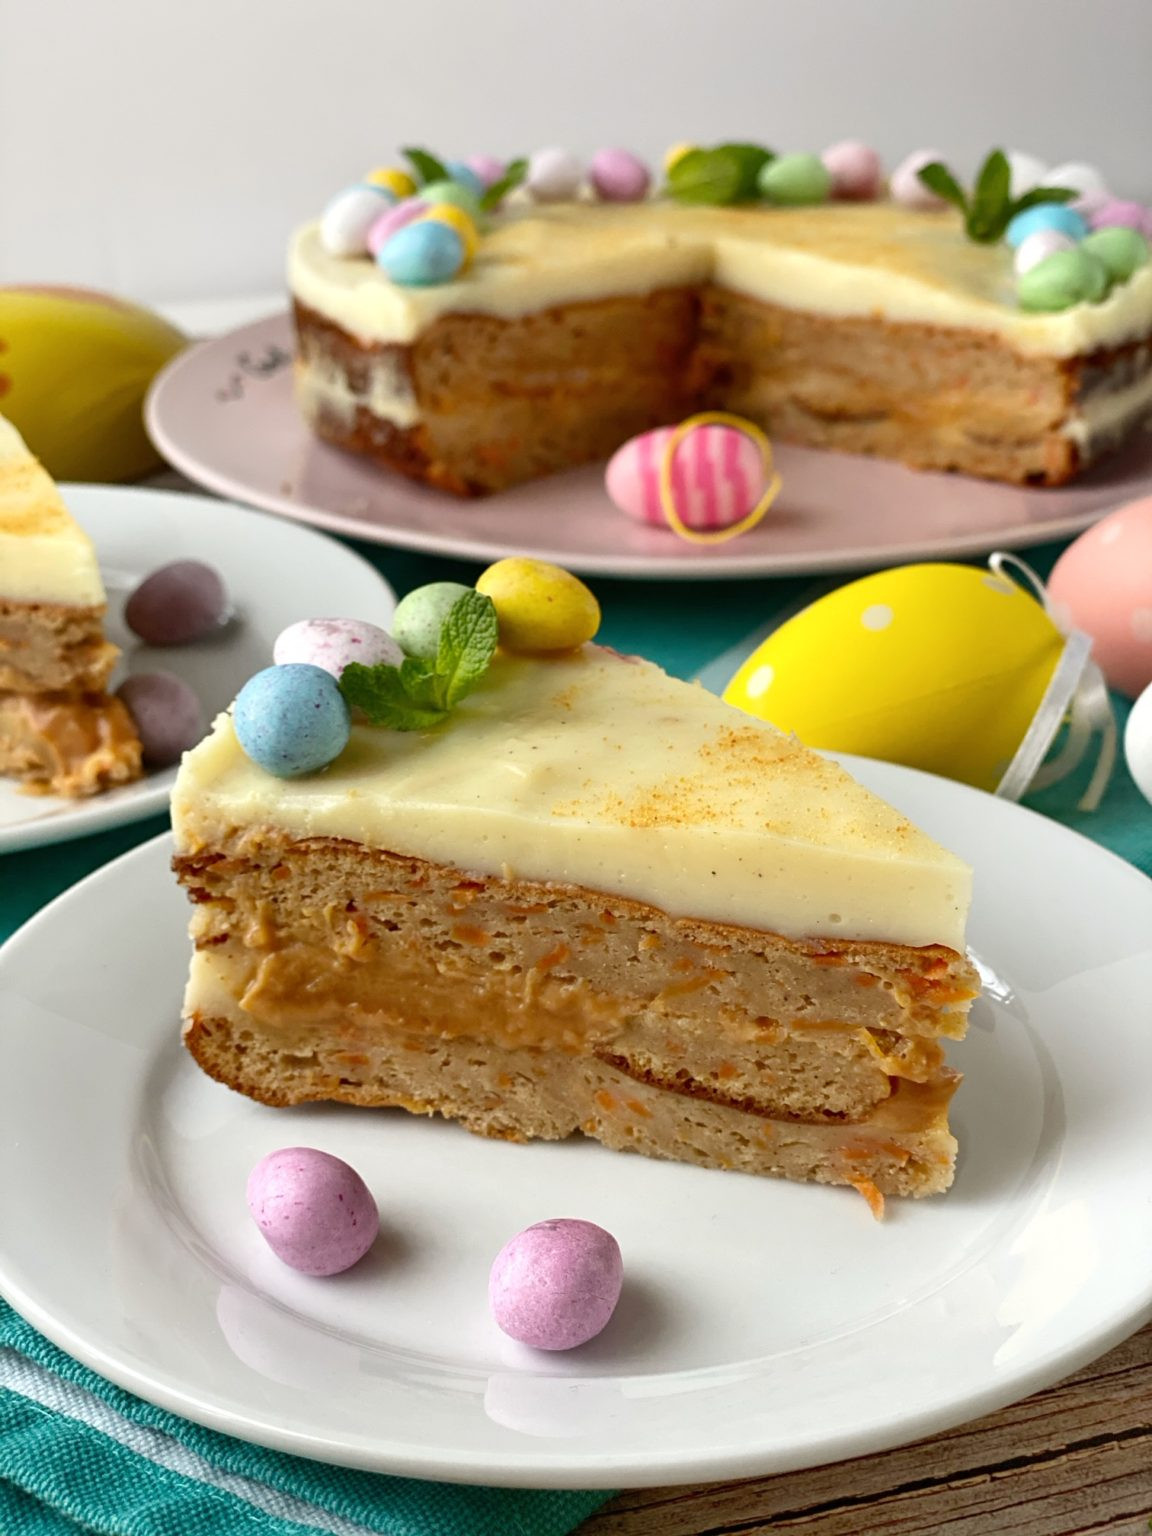 Easter Carrot Cake Best Of Easter Carrot Cake Veľkonočný Mrkvový Koláč – Eatbakefit